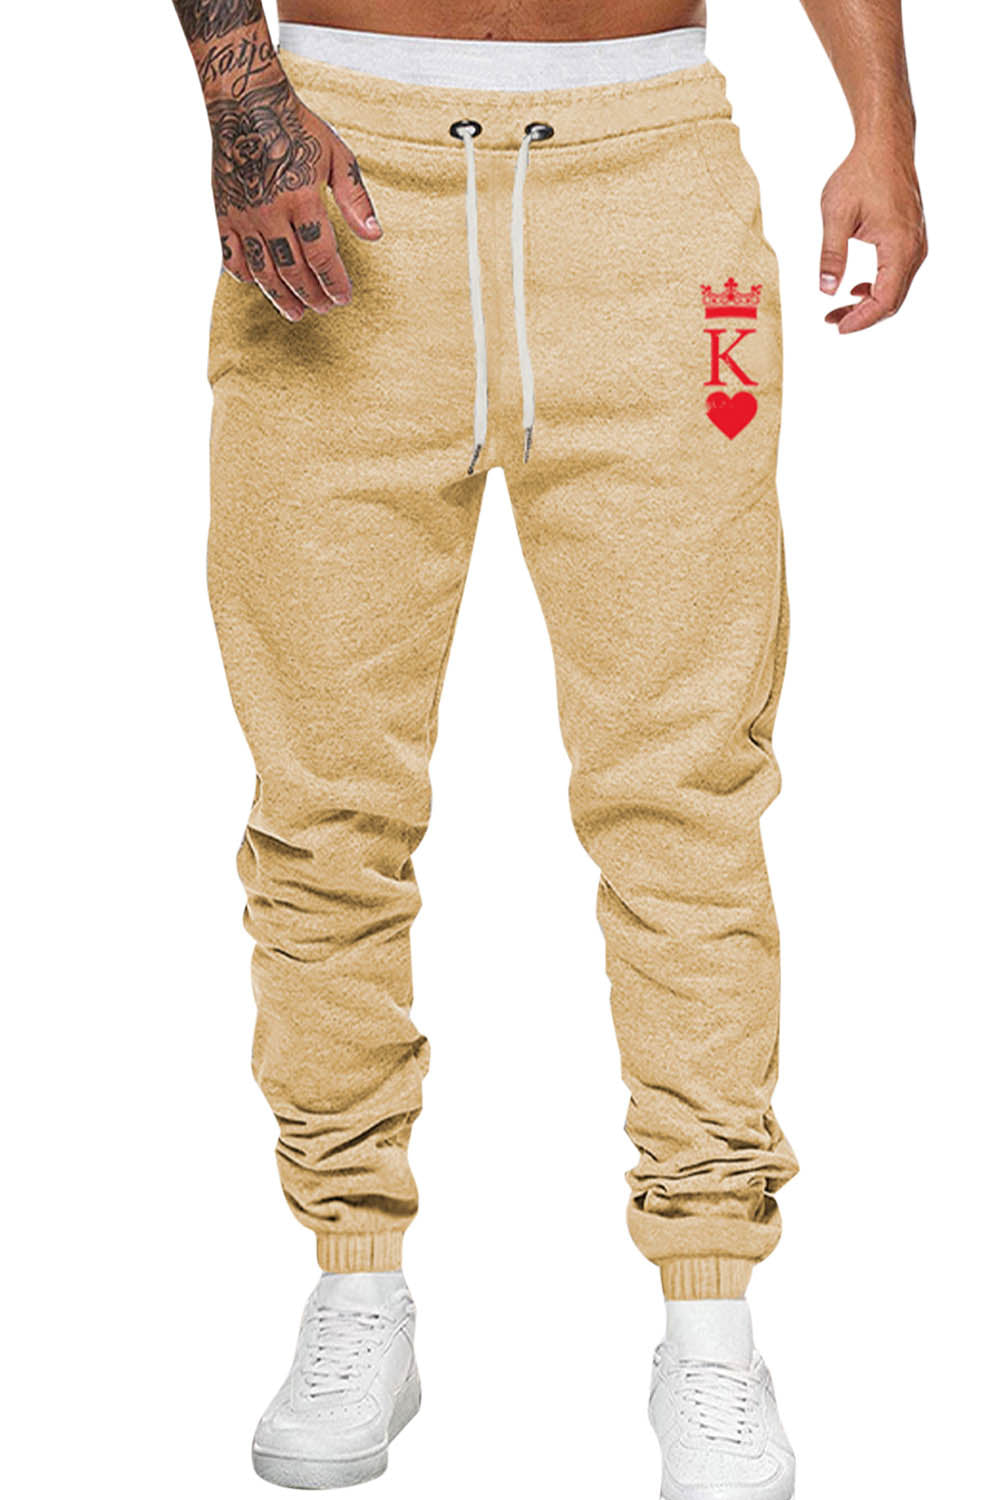 Apricot Crown K Heart Graphic Men Sweatpants Men's Pants JT's Designer Fashion